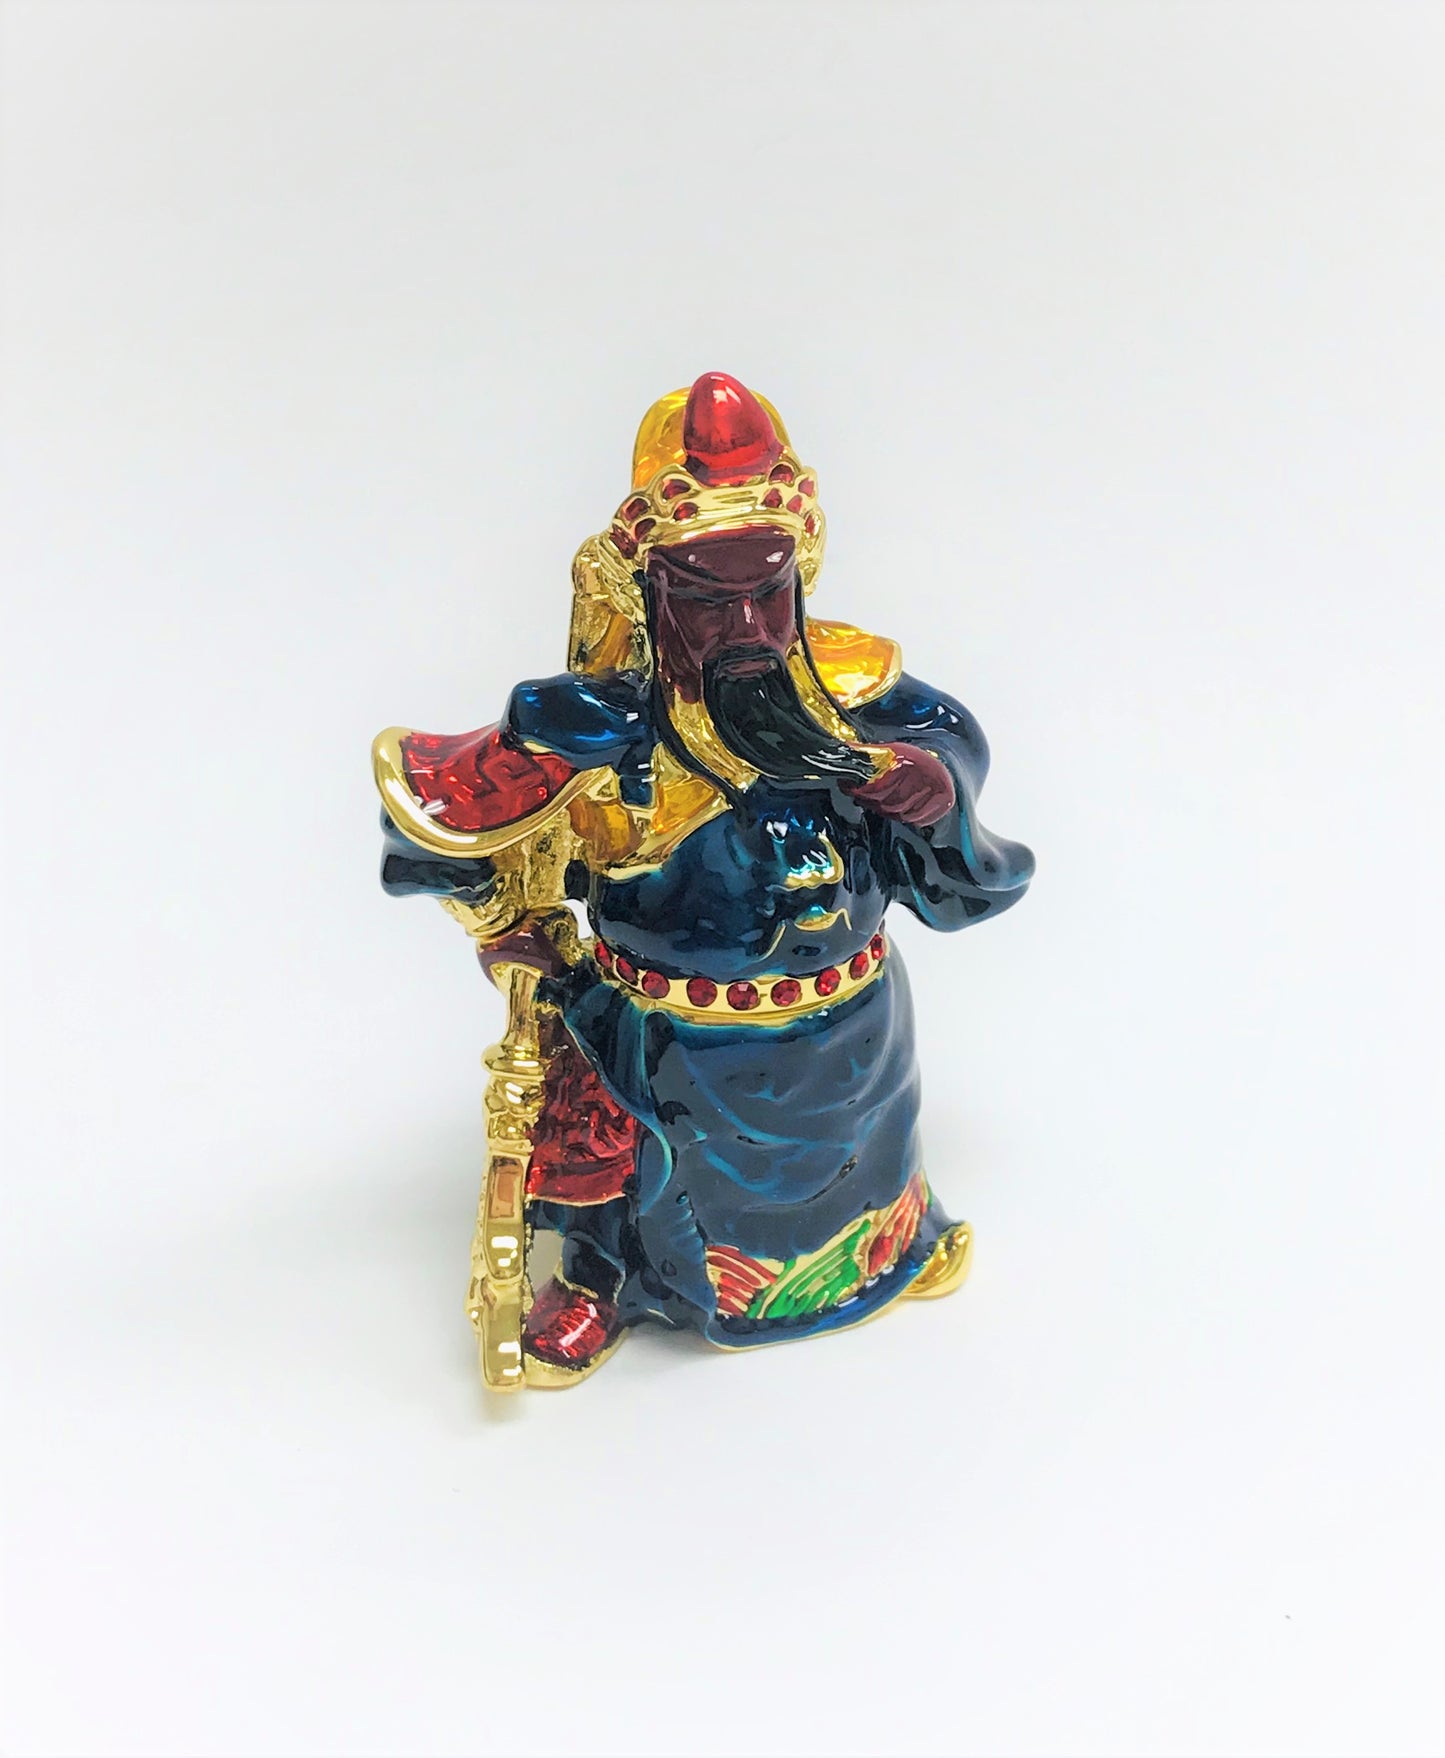 Cristiani Collezione Chinese Warrior Trinket Box.